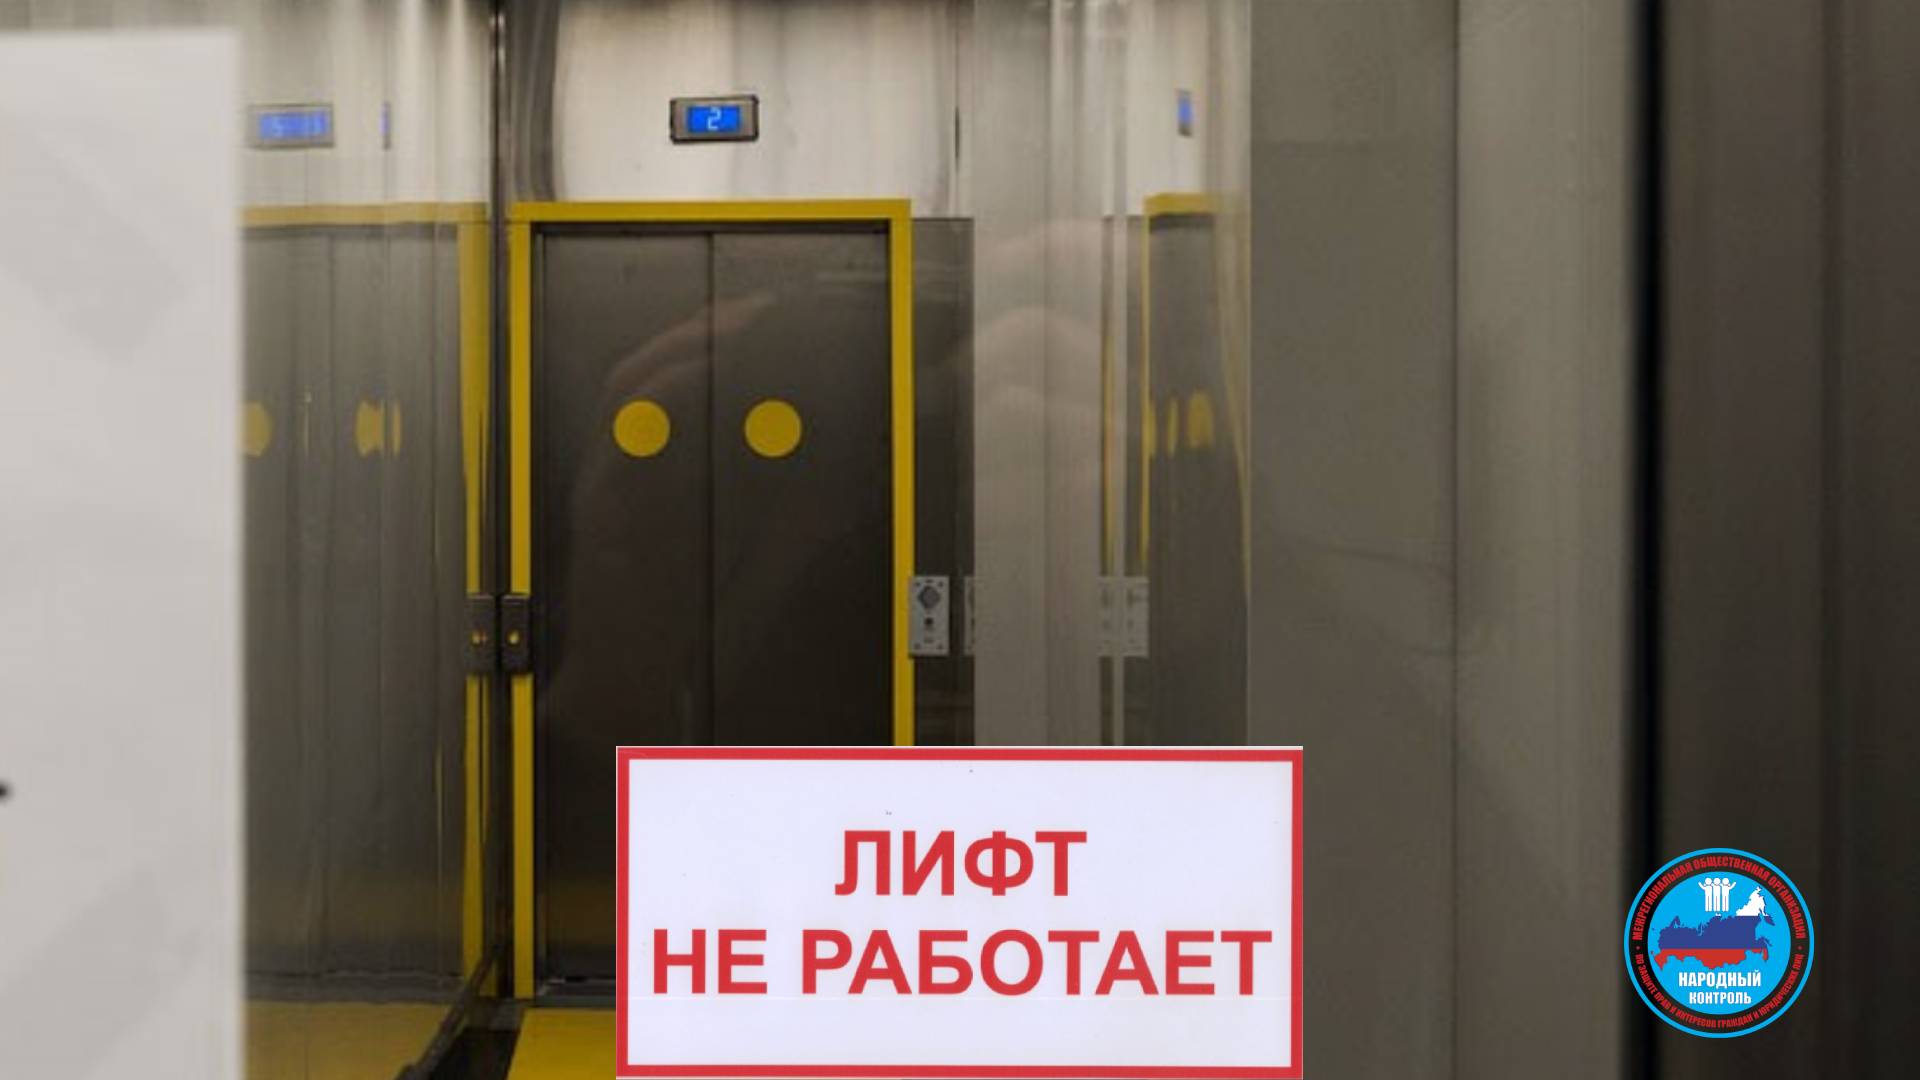 Обслуживающая компания Лифтконнект ежедневно обещает запустить лифт “завтра”, но этого не происходит. Маломобильные граждане не могут спуститься